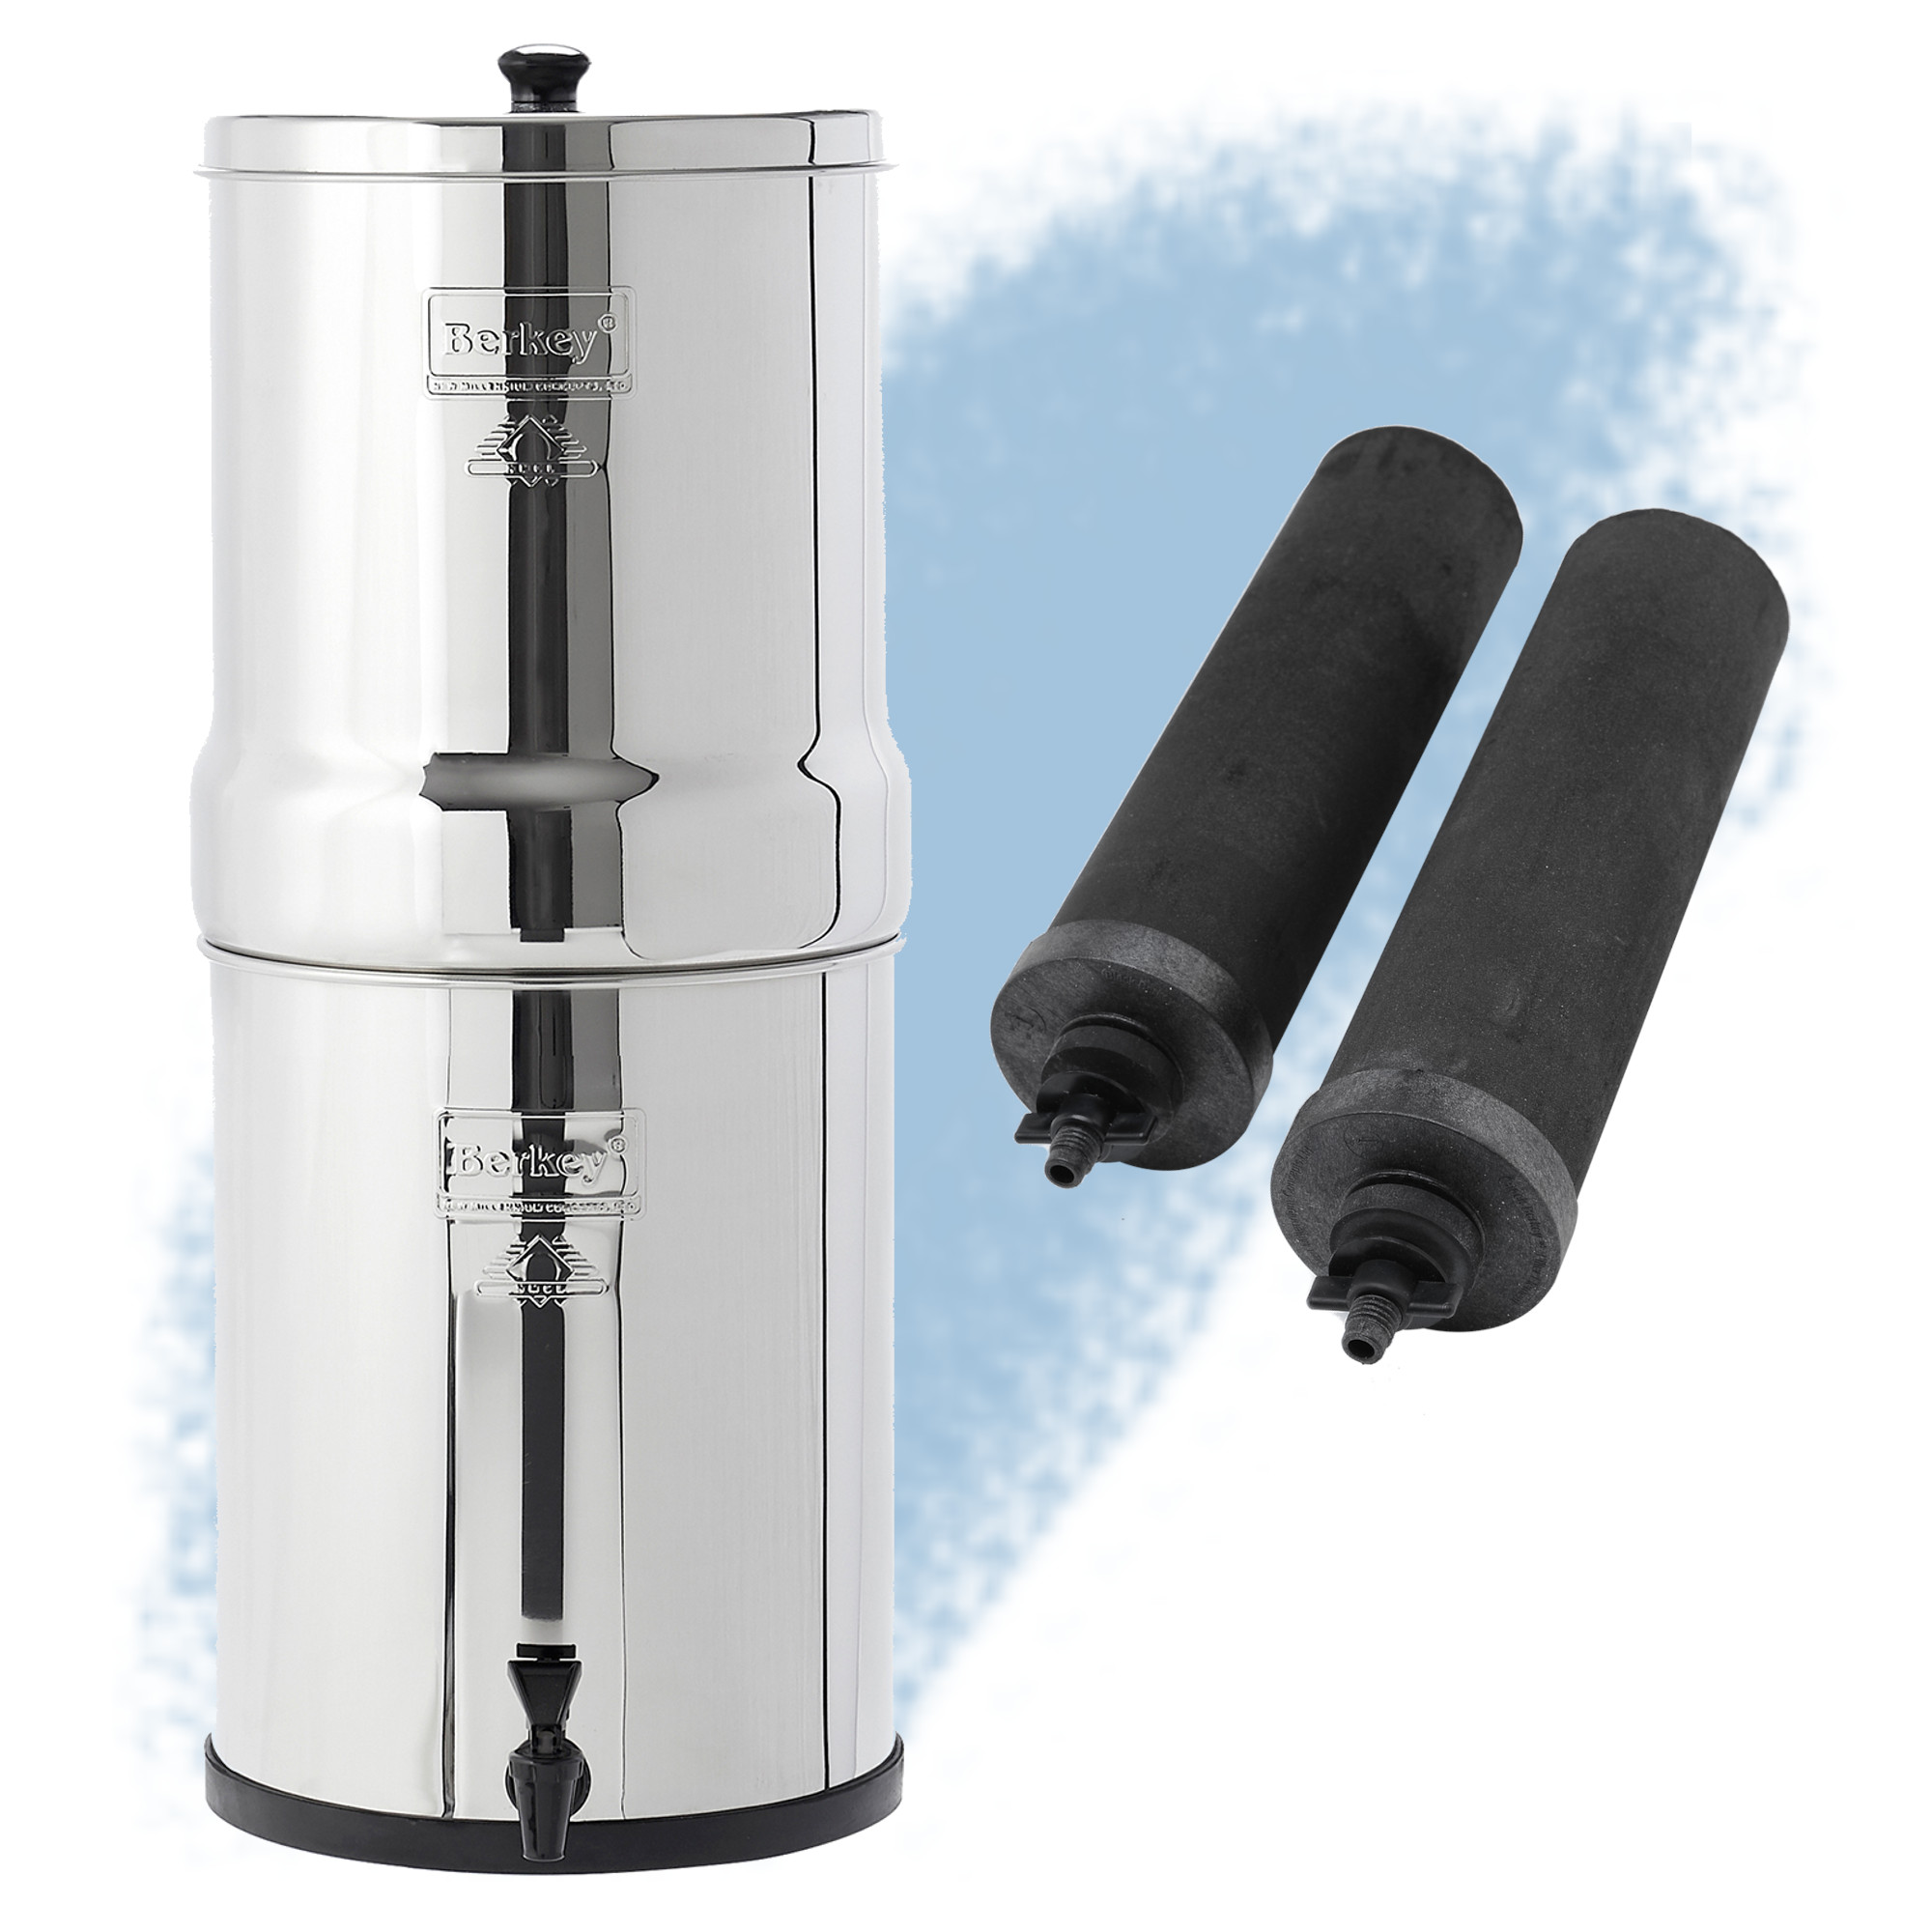 Royal BERKEY® Filter - No. 1 water purifier